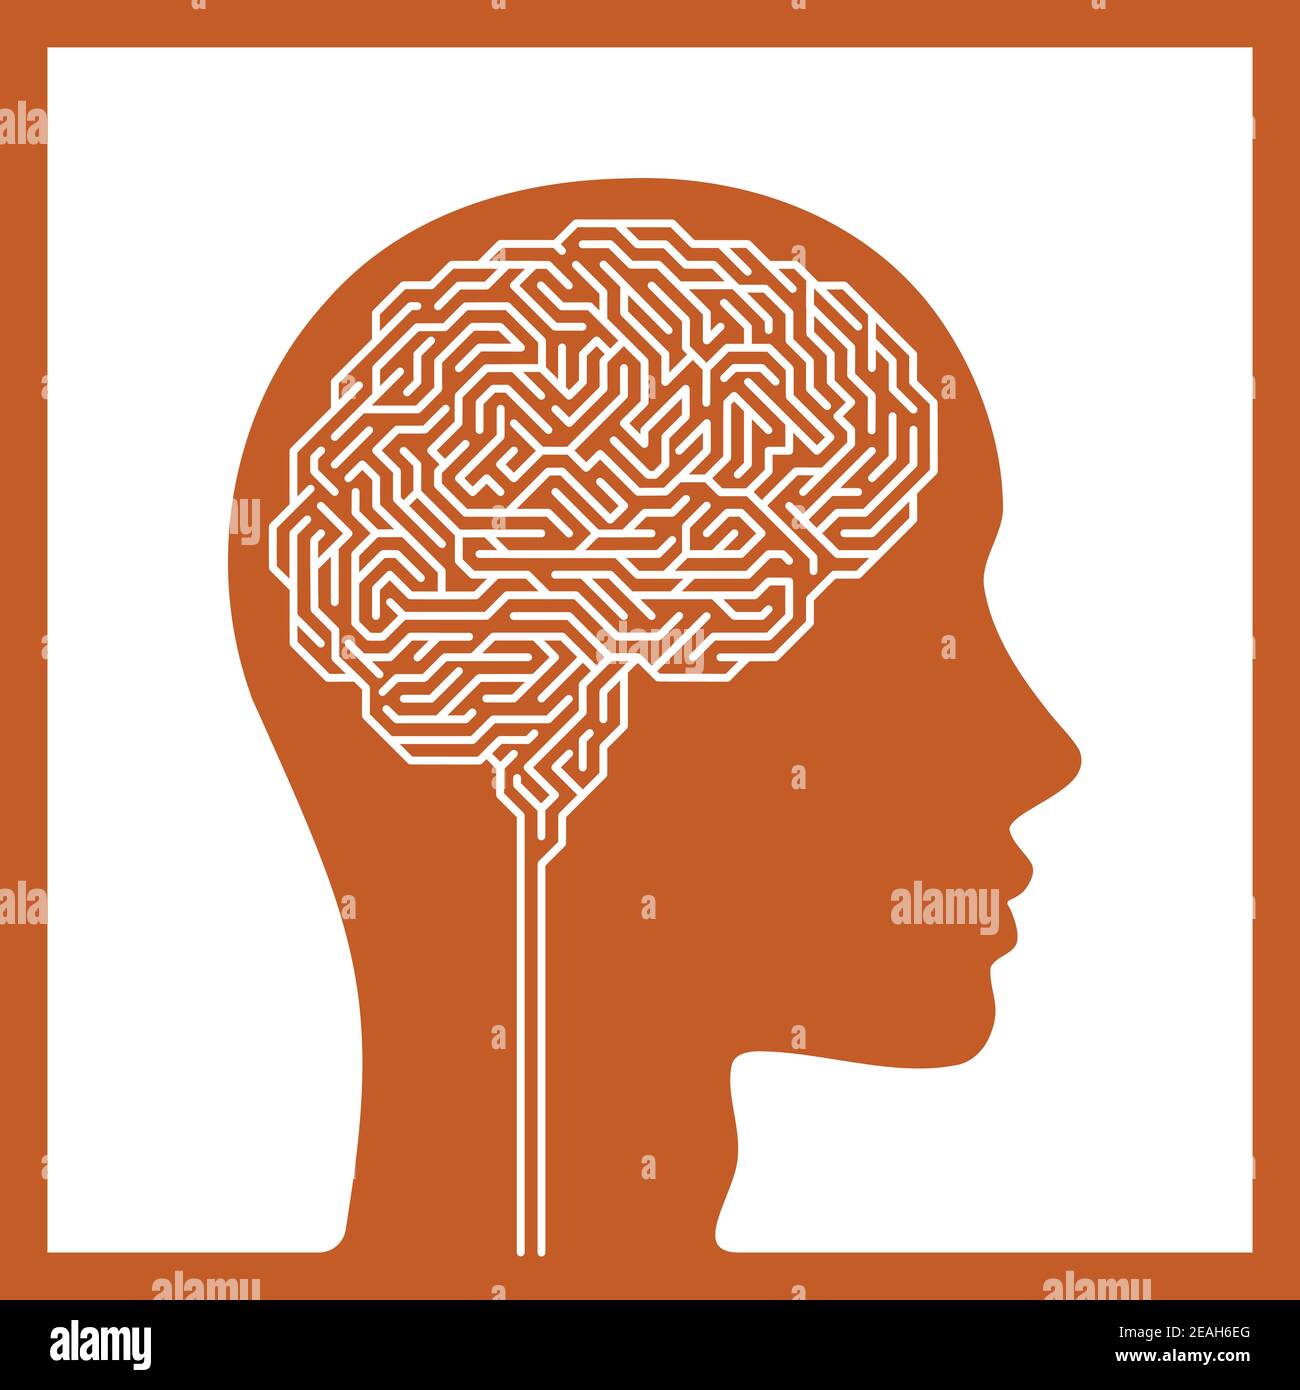 Vektor-Illustration von Gehirn geformten Labyrinth. Konzeptuelles Bild von Wissenschaft und Medizin. Stock Vektor